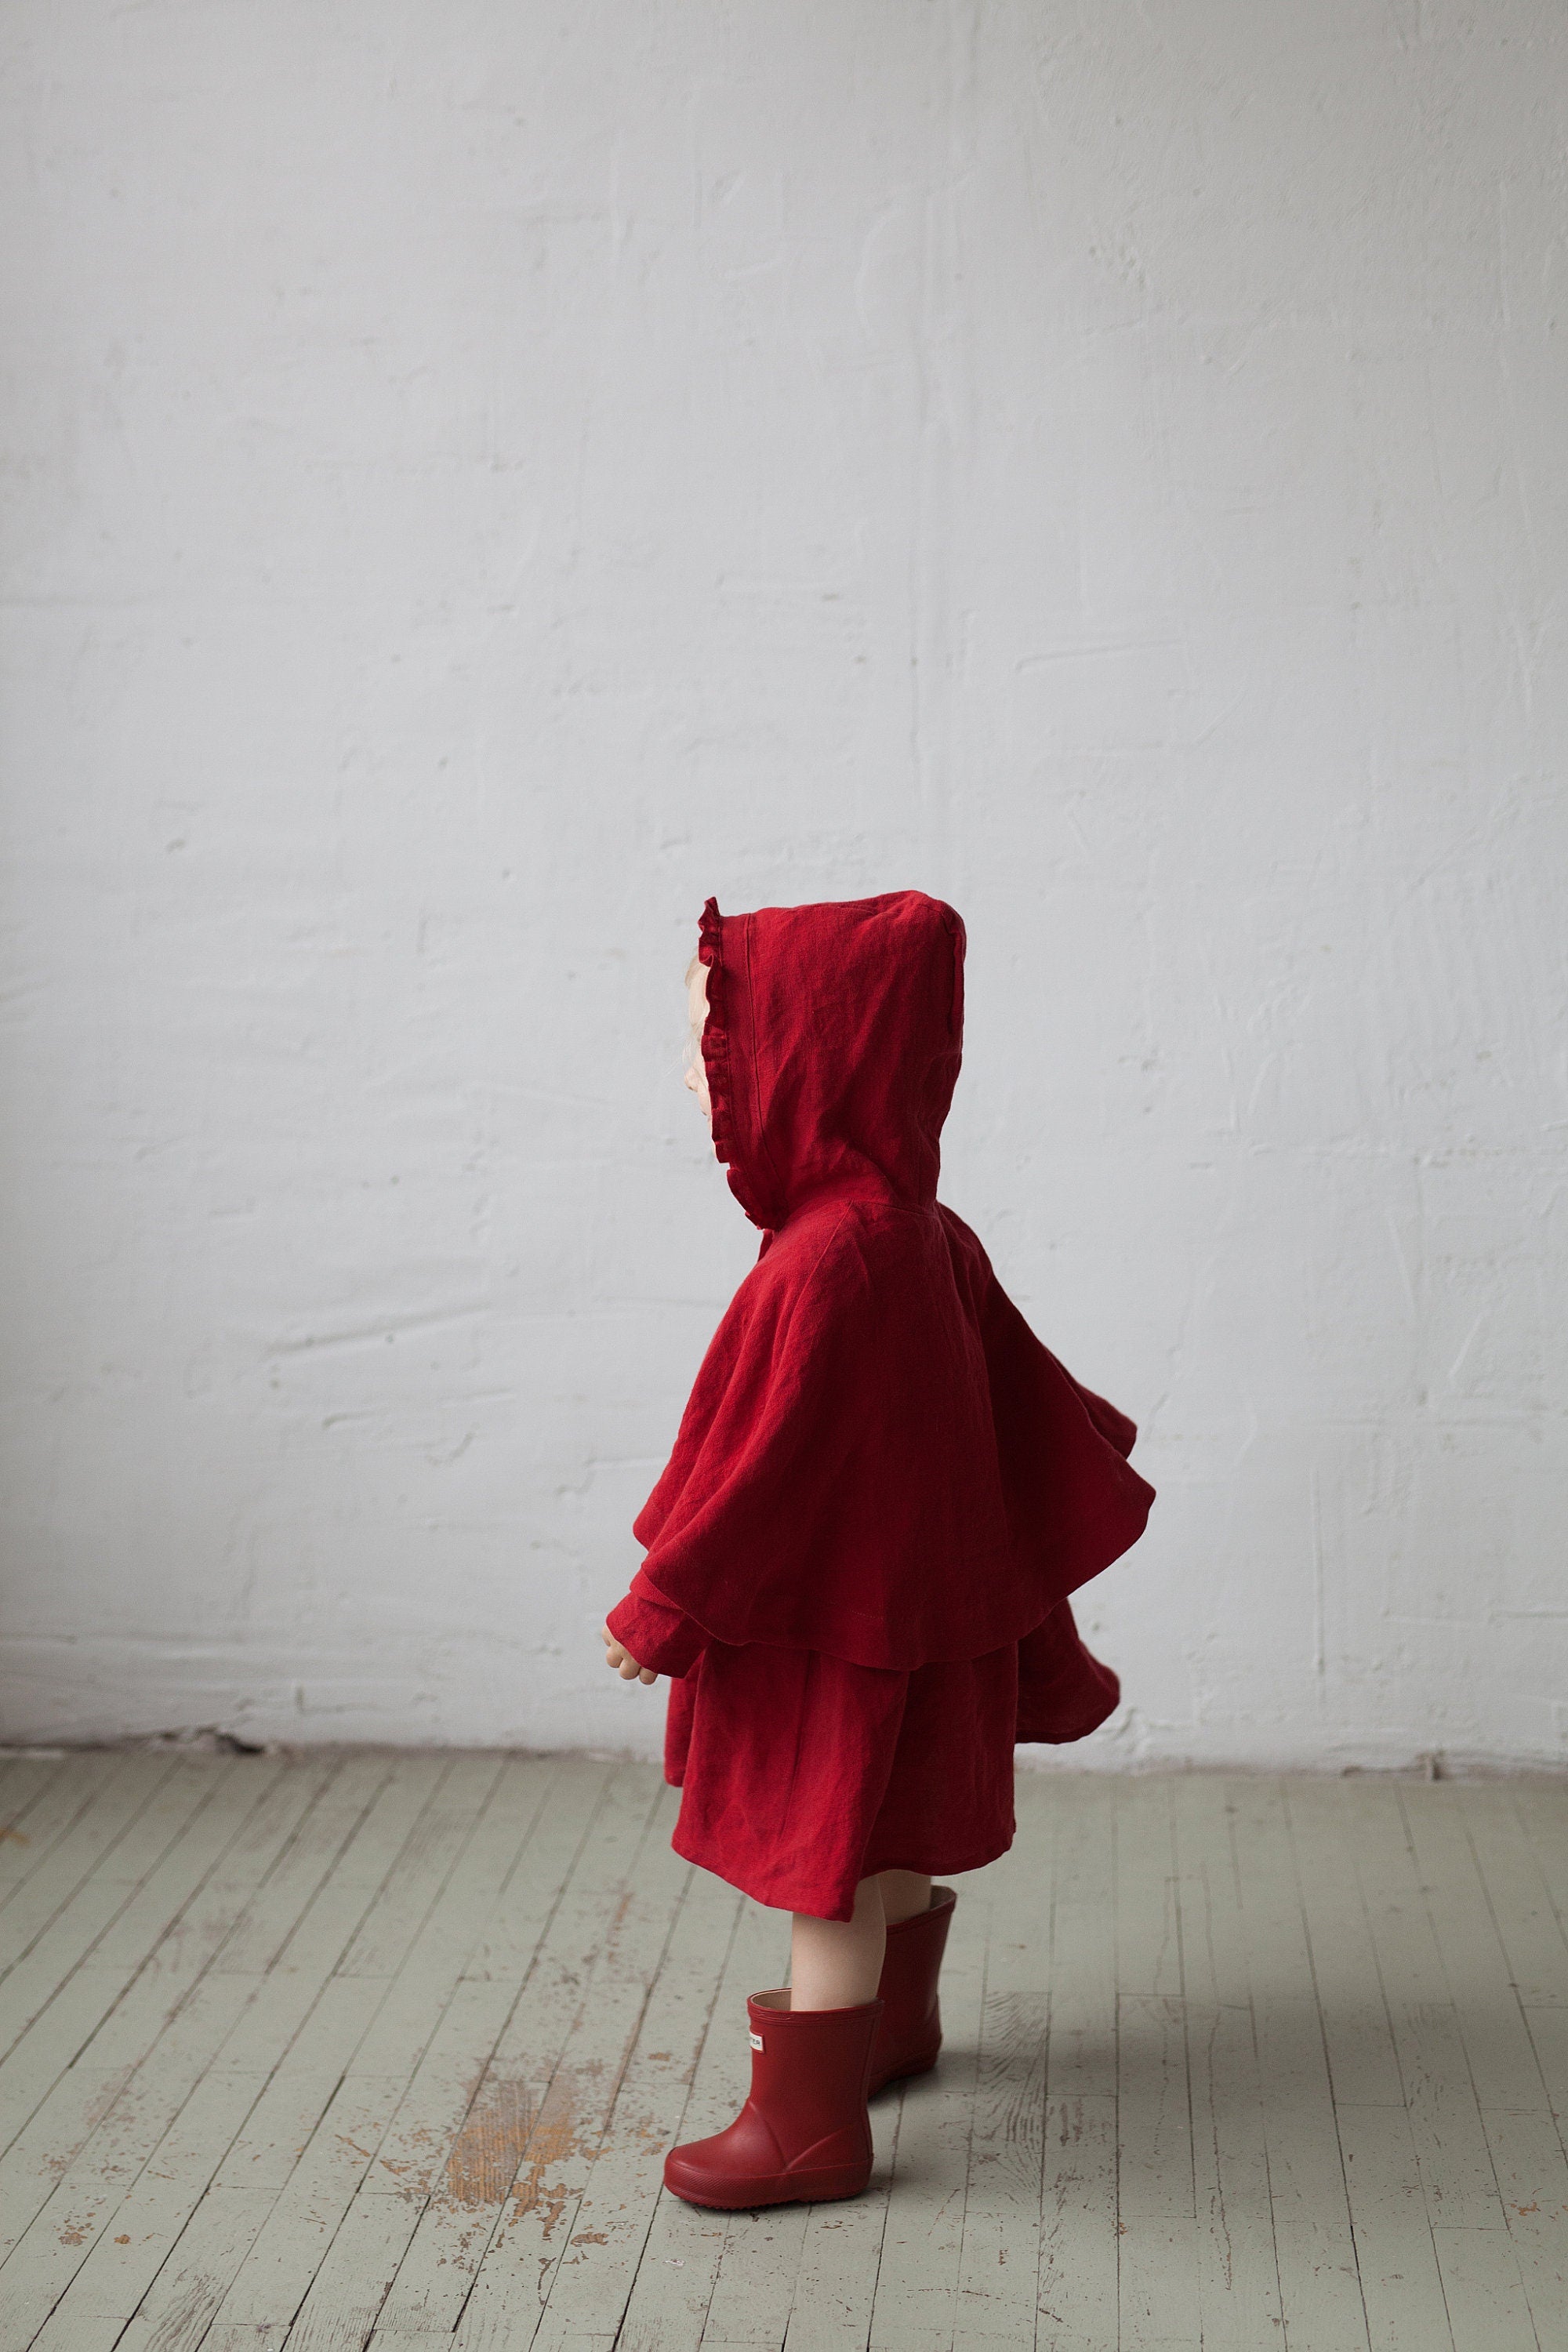 Cherry Little Red Riding Hood Linen Cape